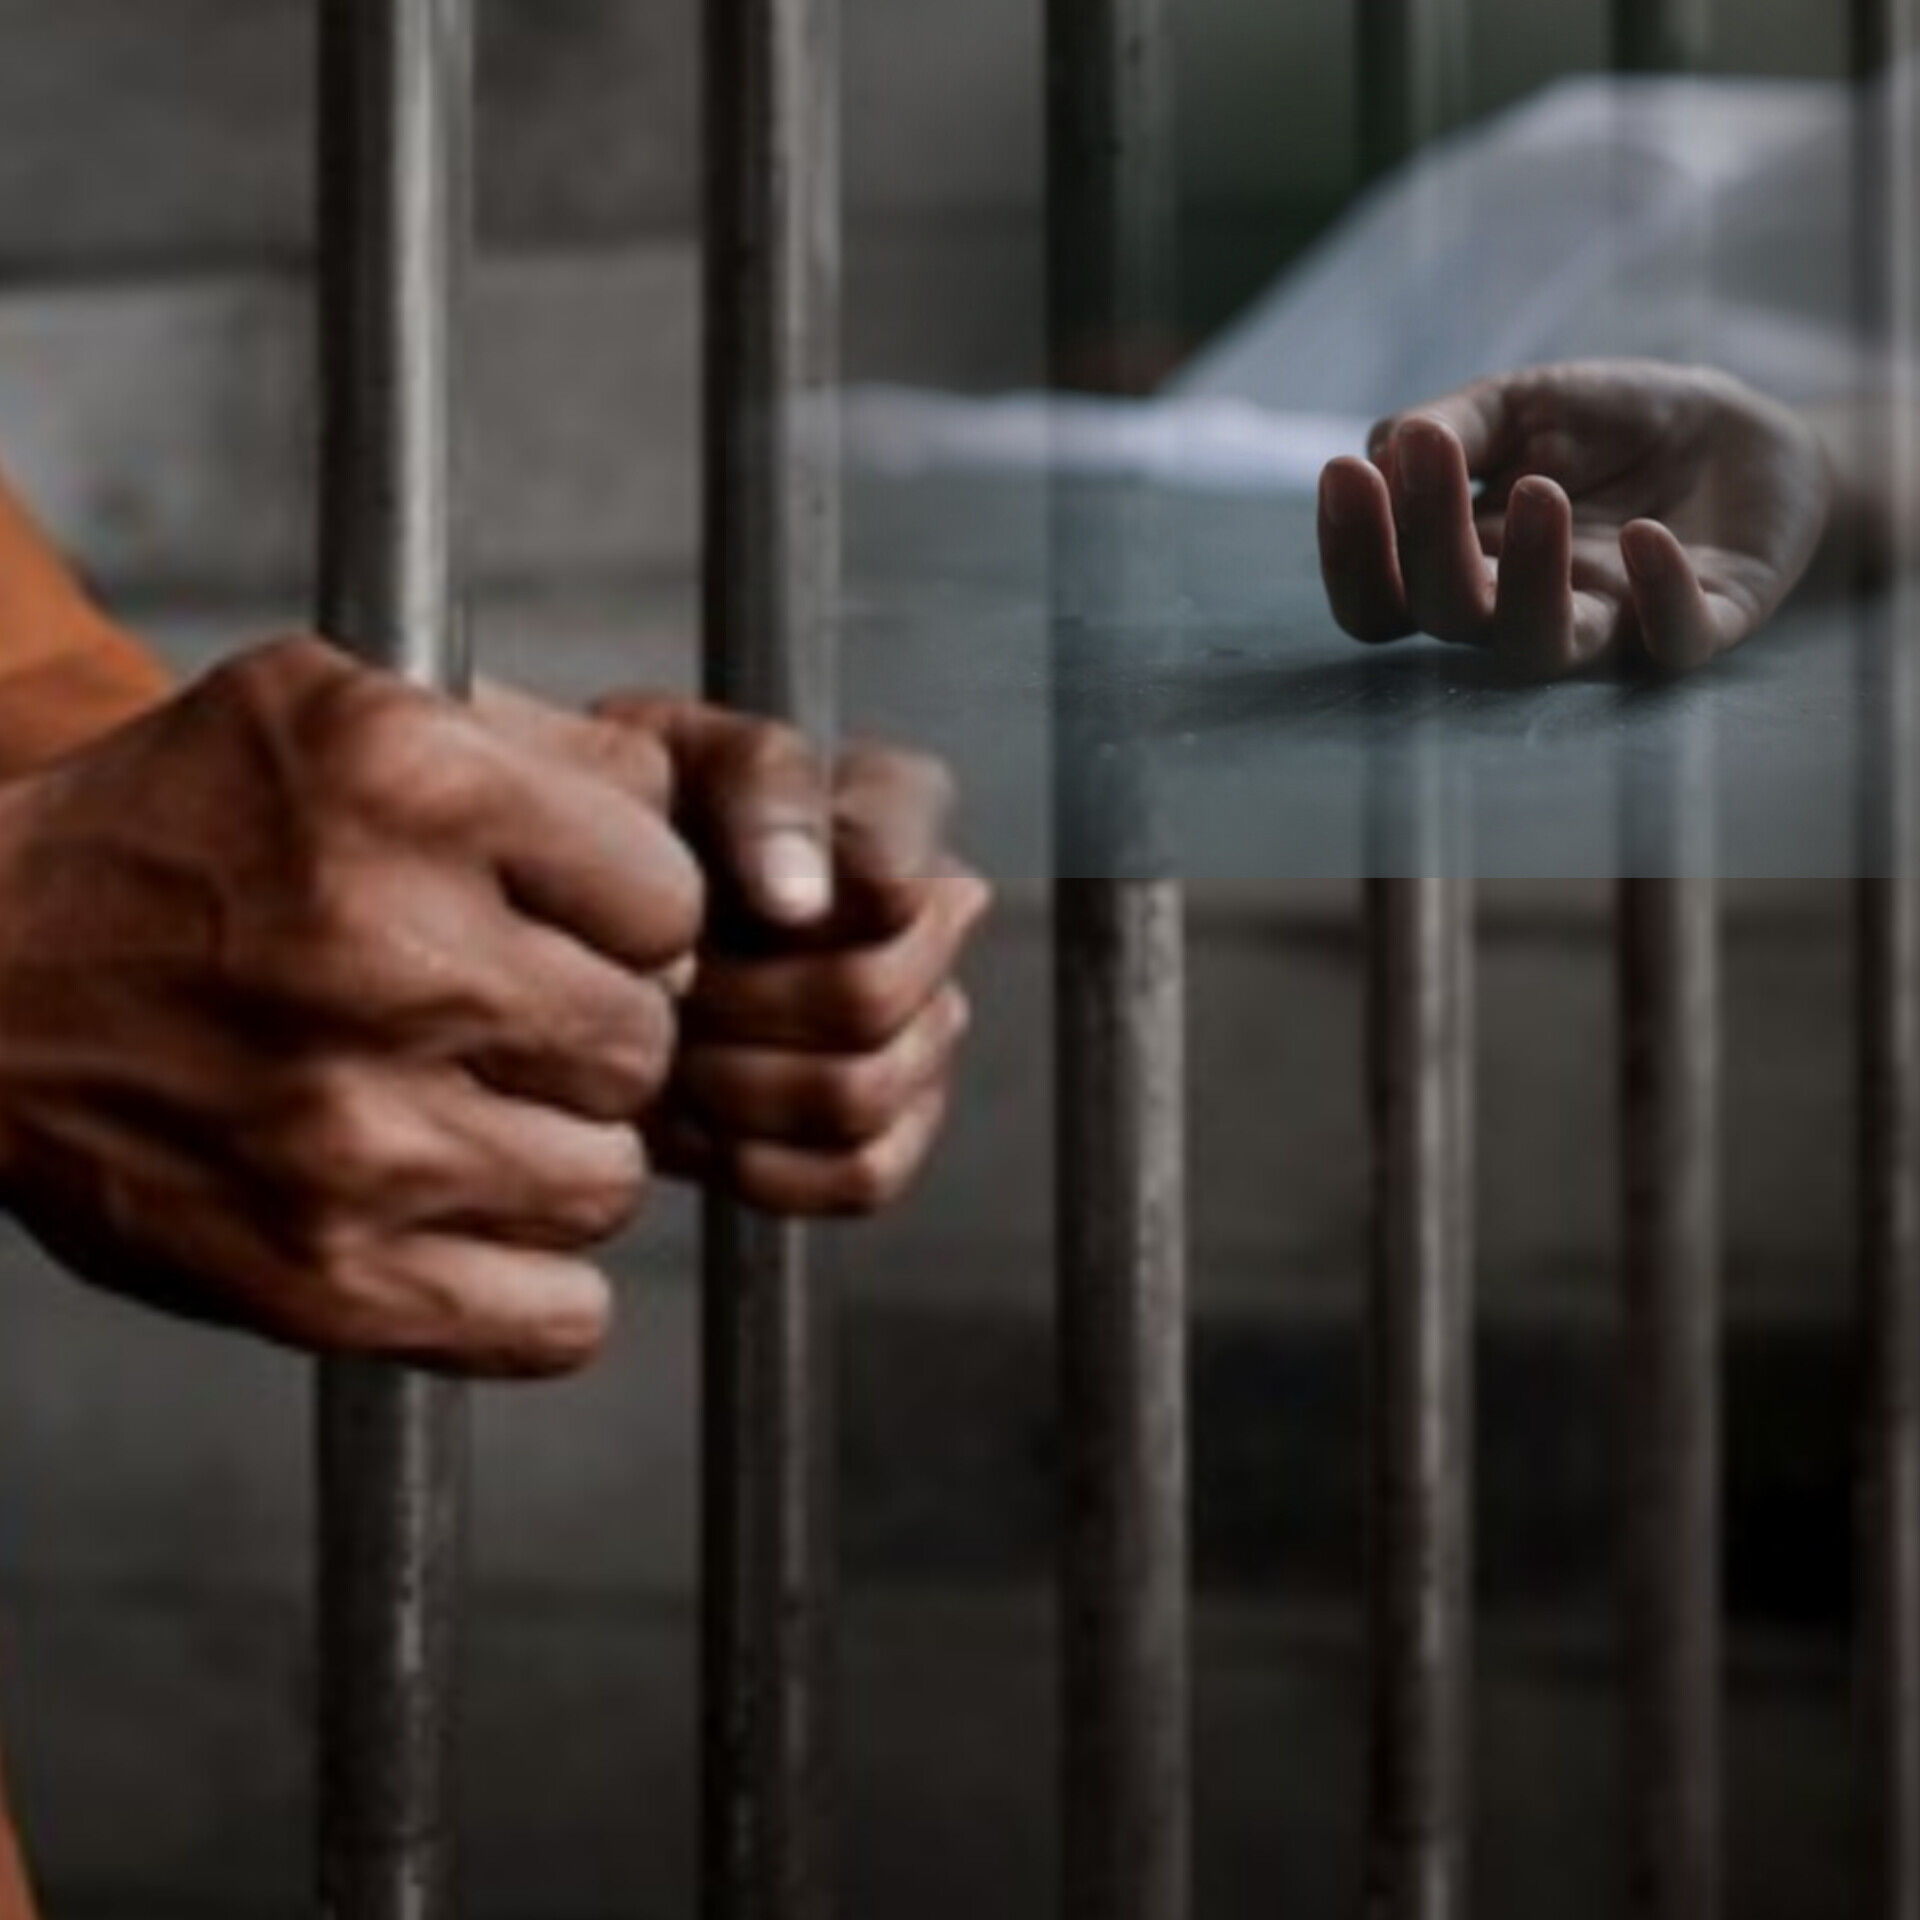 बागपत जेल में बंद कैदी की हार्ट अटैक से मौत, पोस्टमार्टम के लिए भेजा गया शव